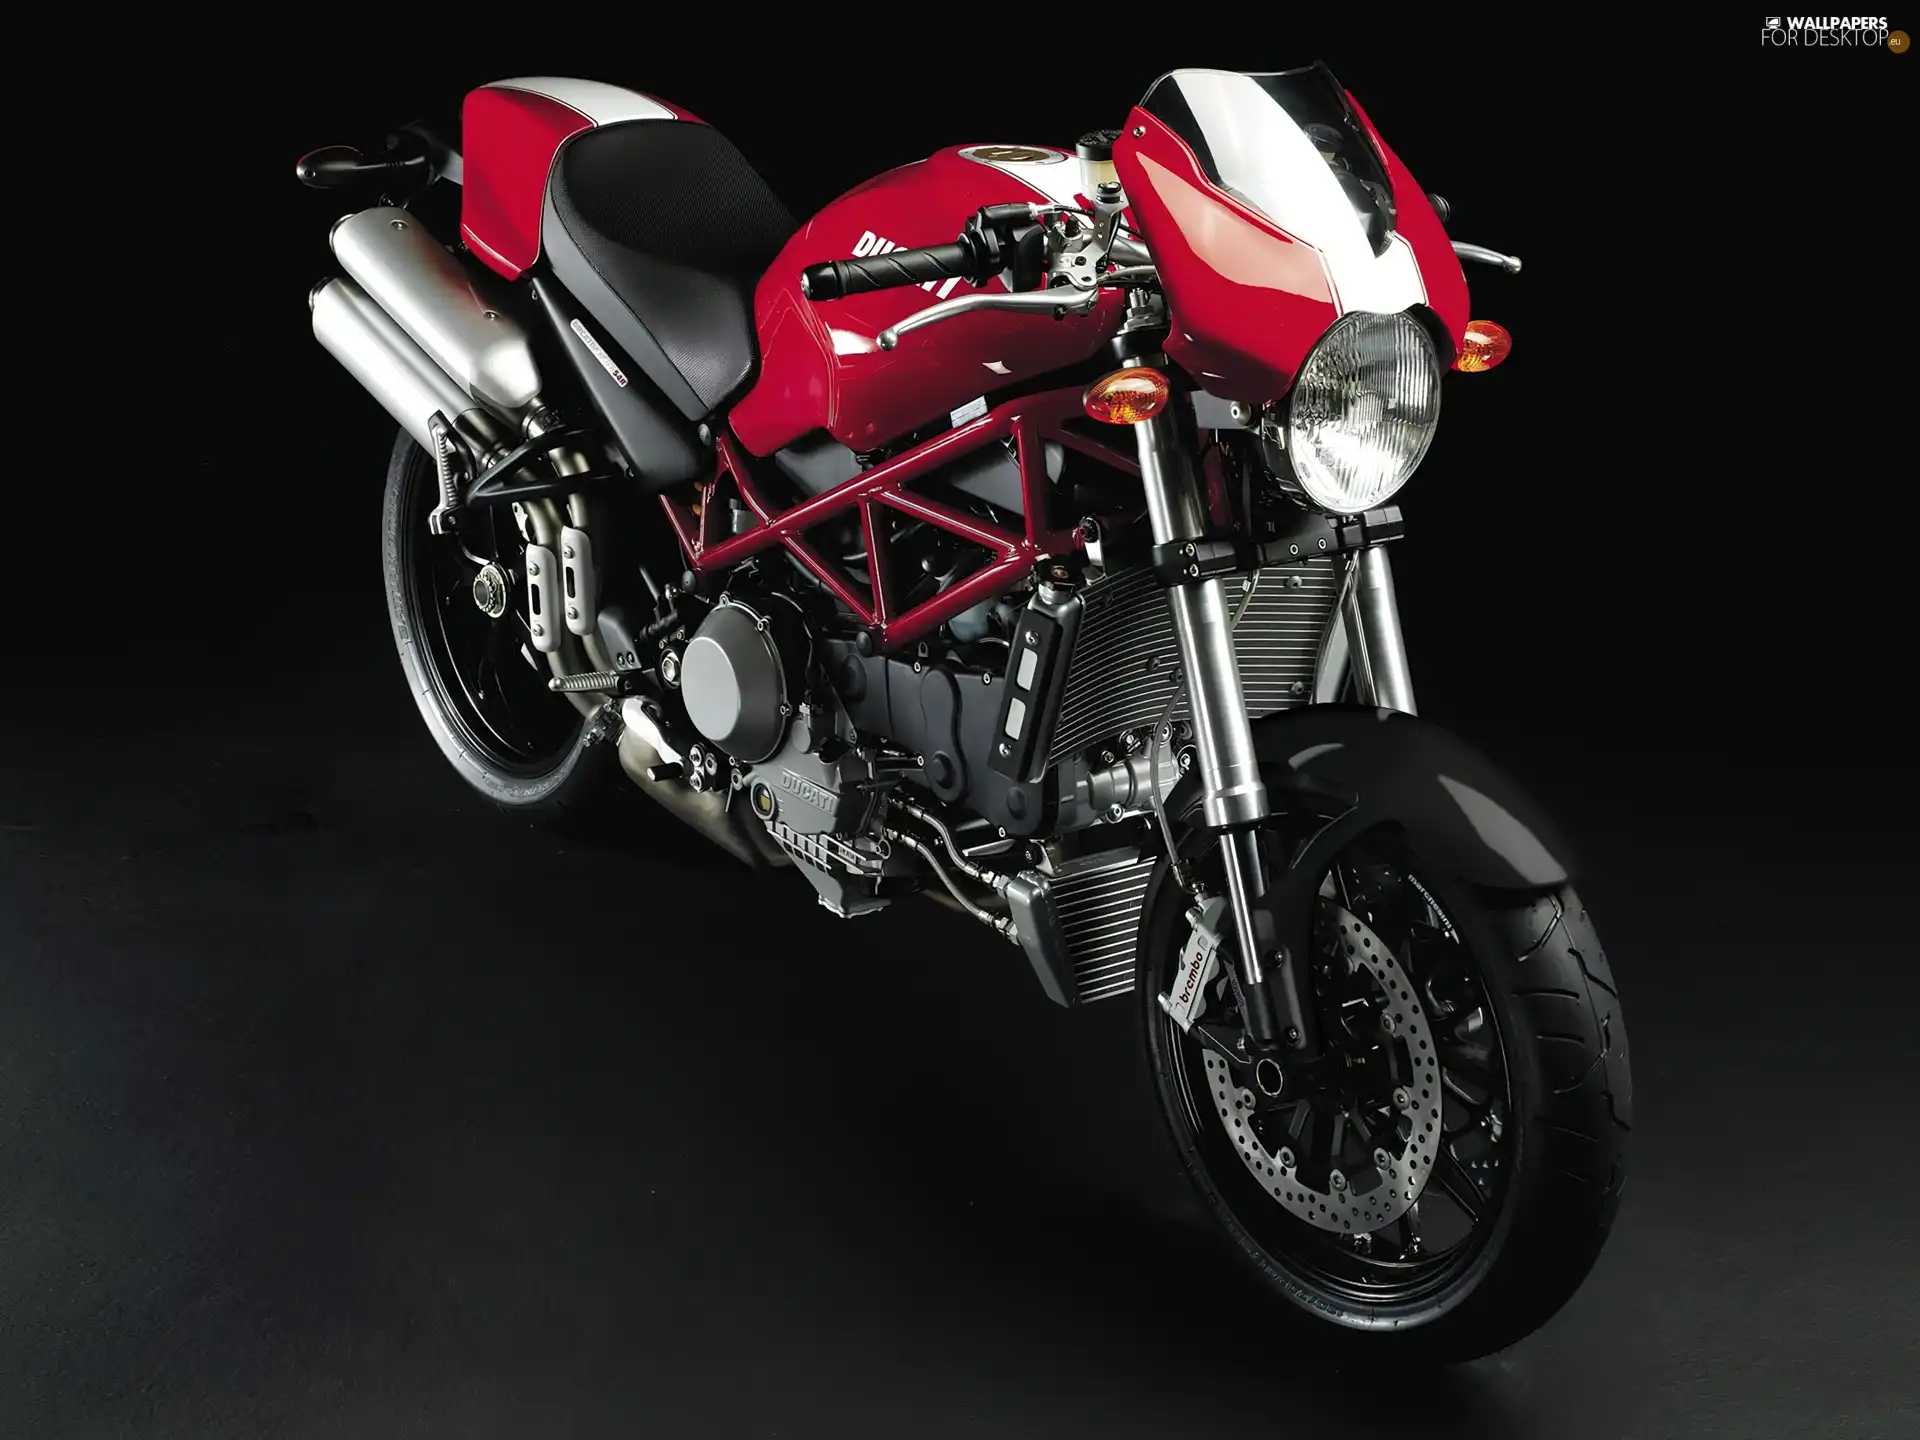 bearing, Ducati Monster 696, frame